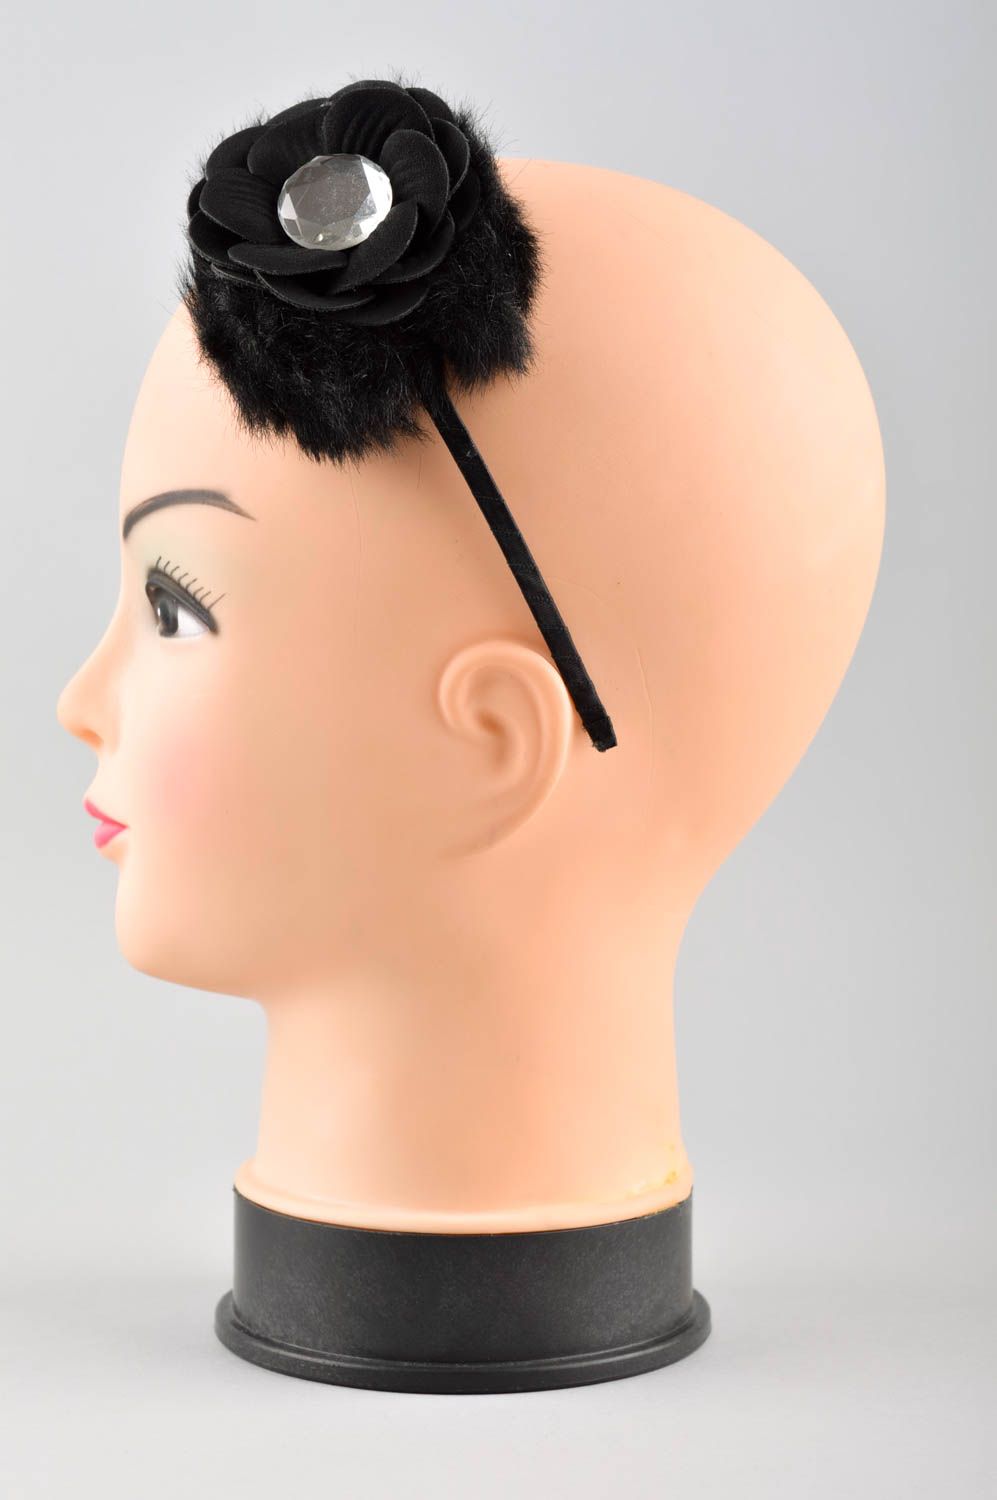 Аксессуар для волос хэнд мэйд обруч на голову с цветком женский аксессуар фото 2